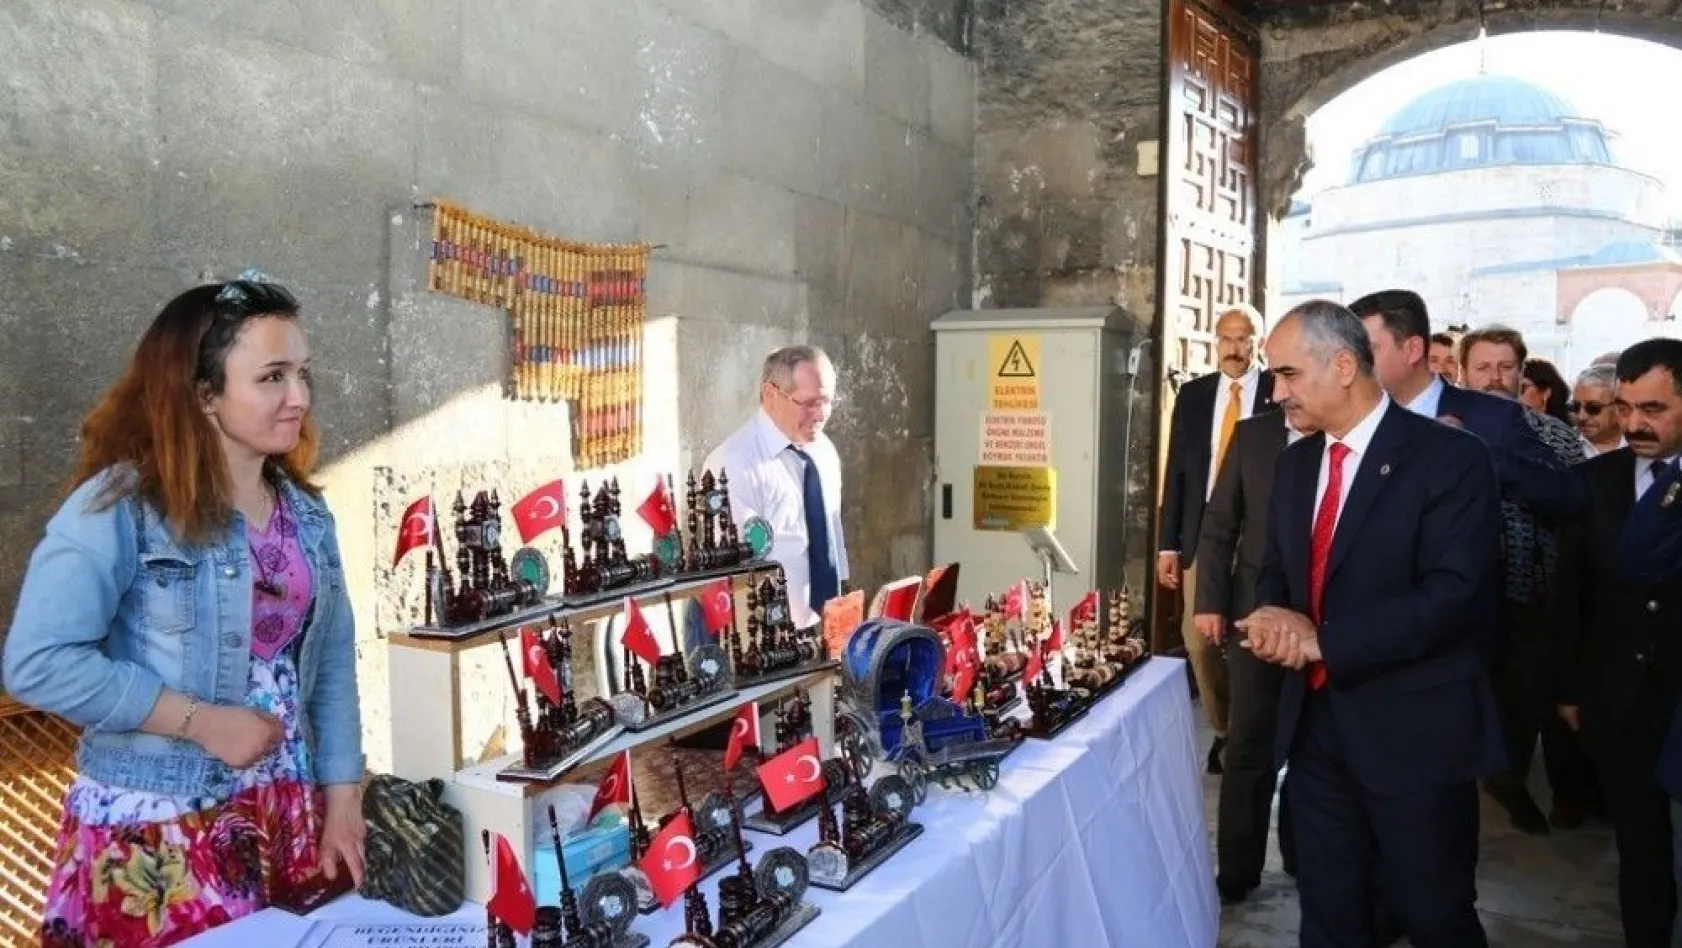 Sivas'ta Geleneksel El Sanatları Sergisi açıldı
